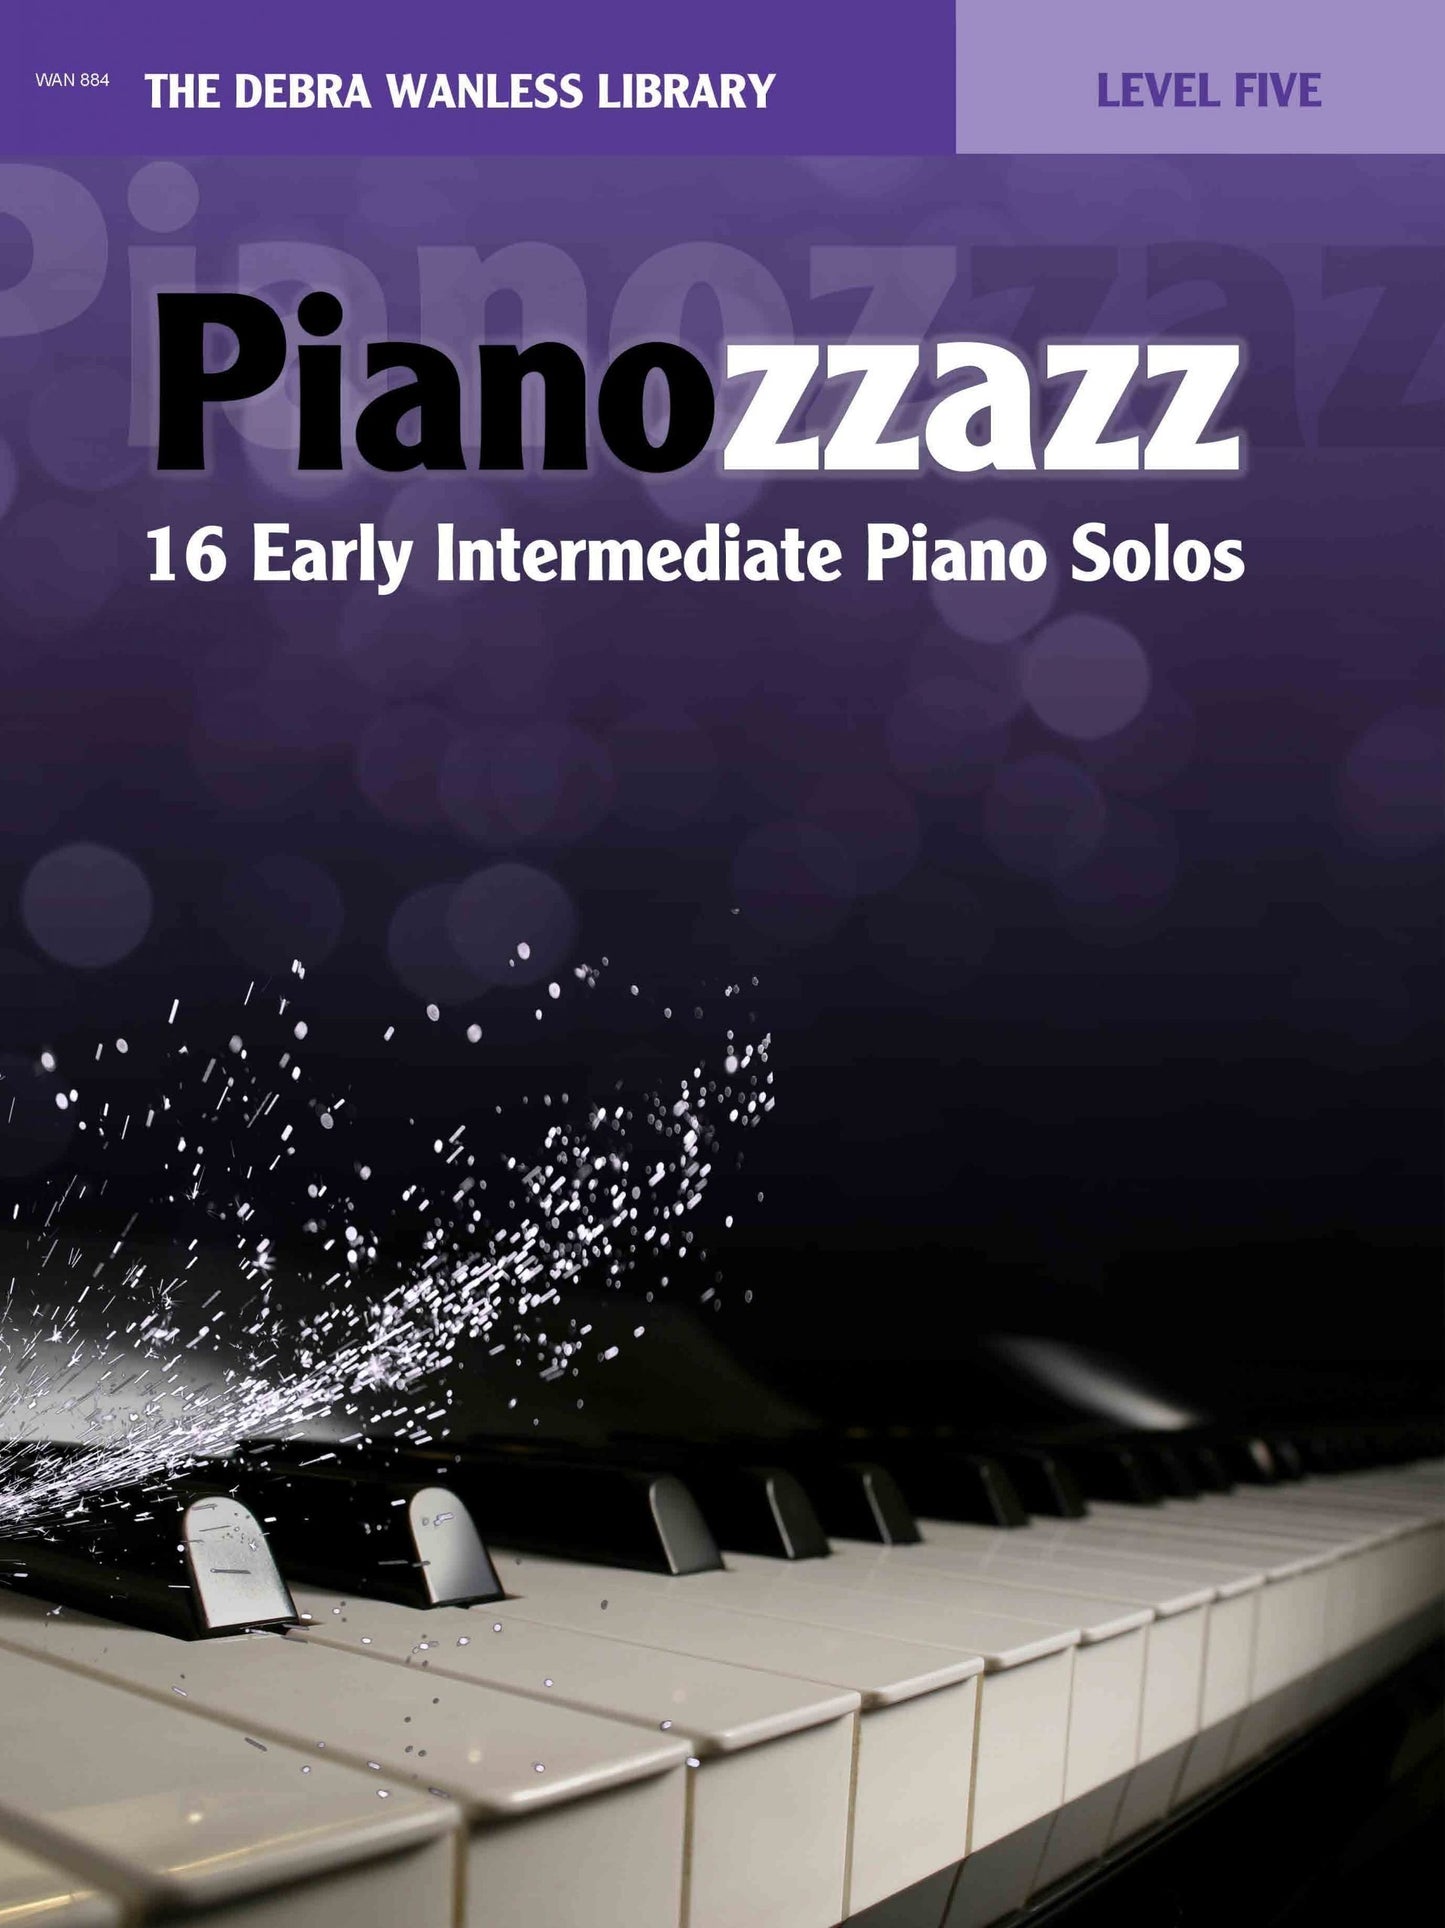 Pianozzazz Level Five